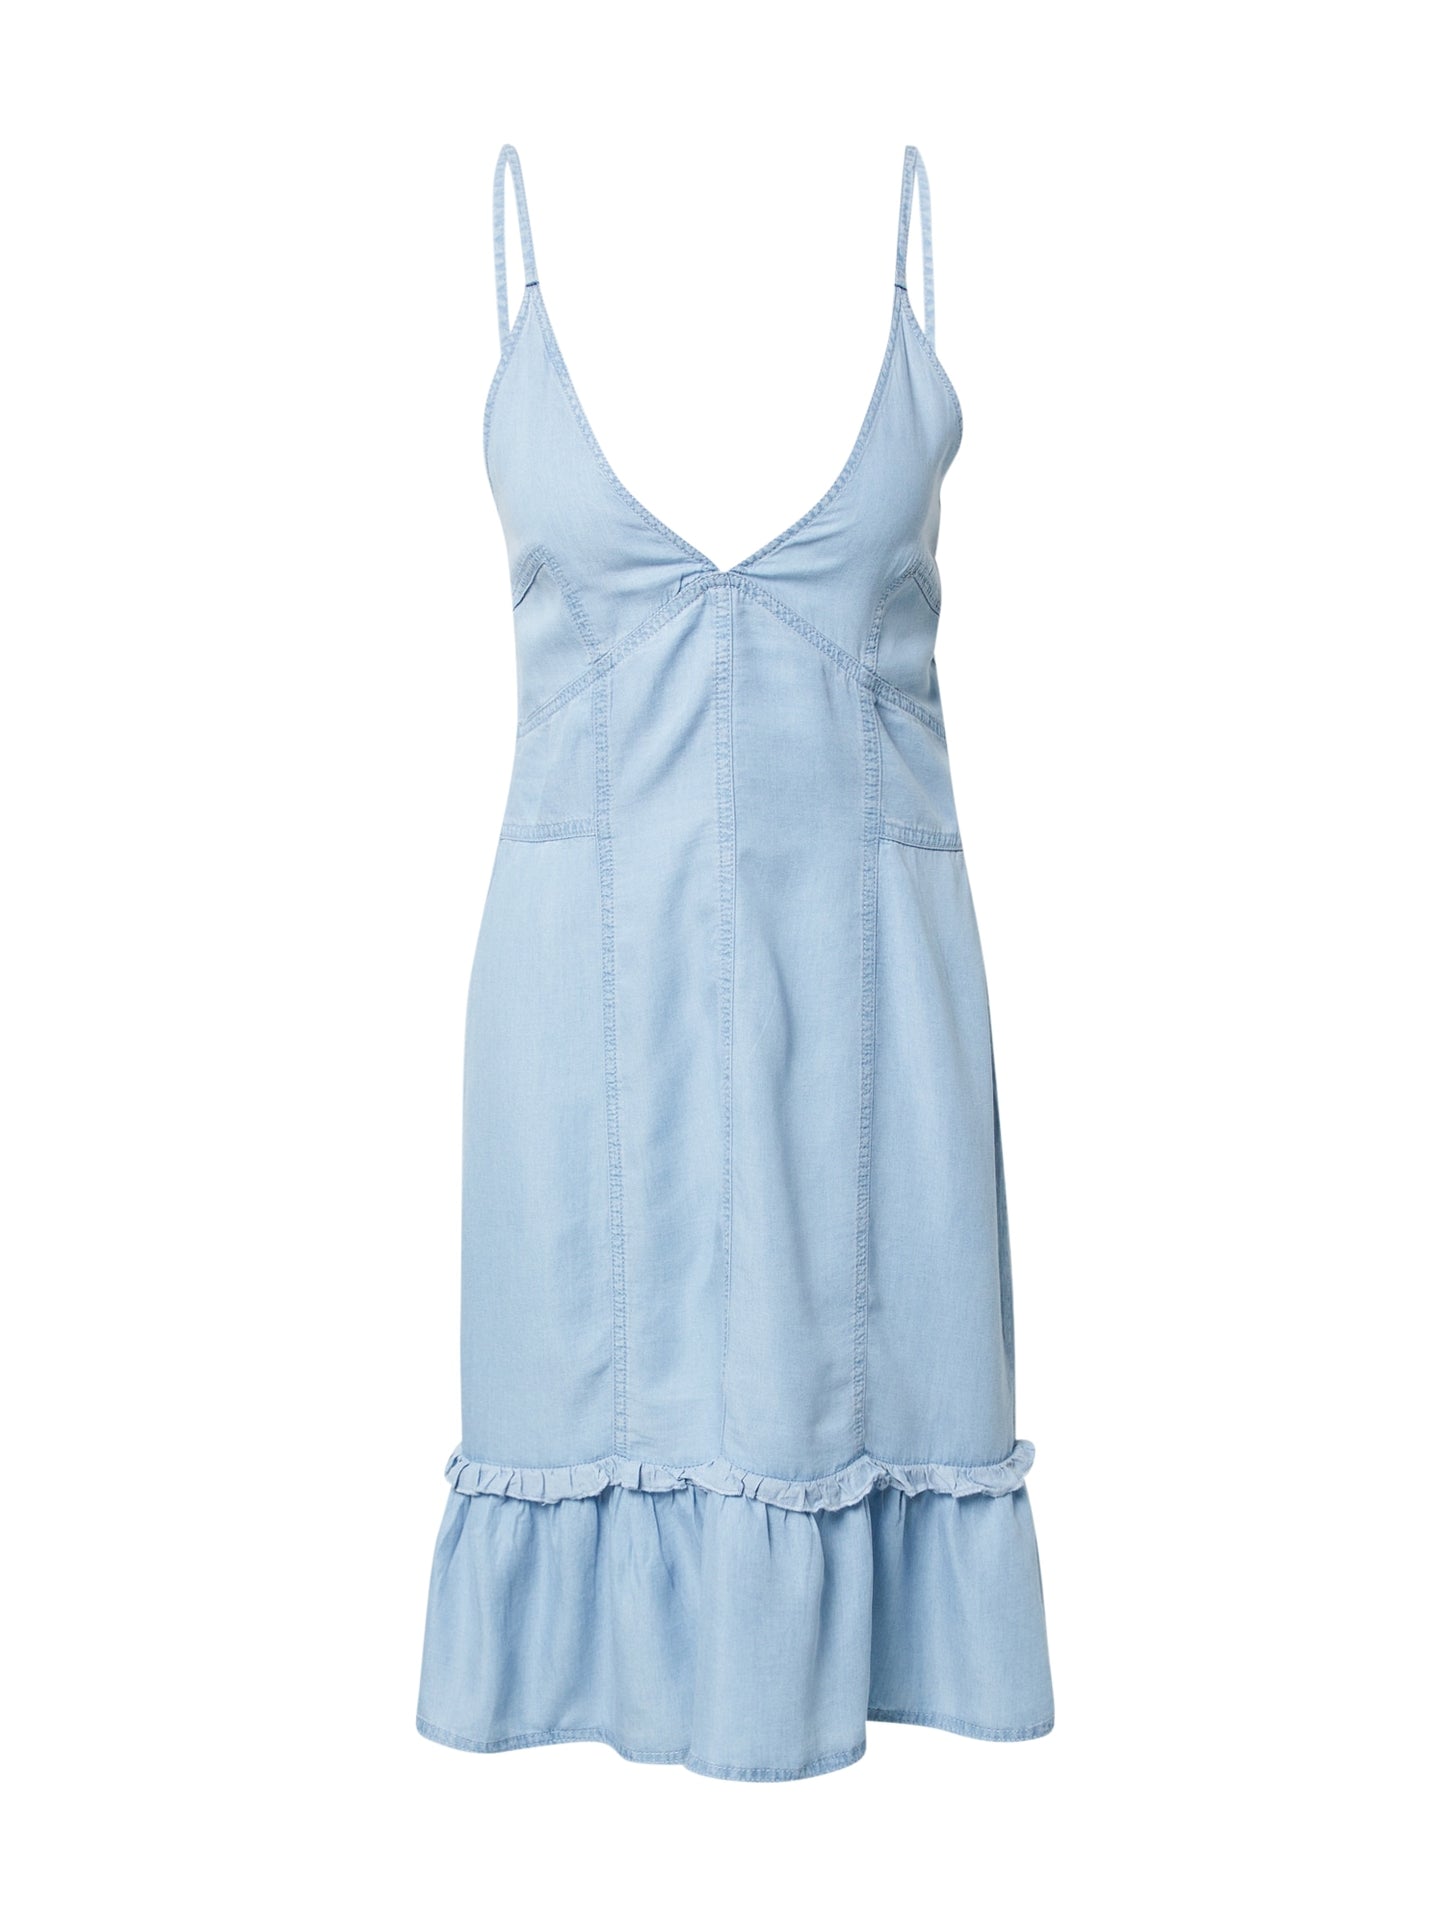 TALLY WEIJL - Summer Dress Light Blue